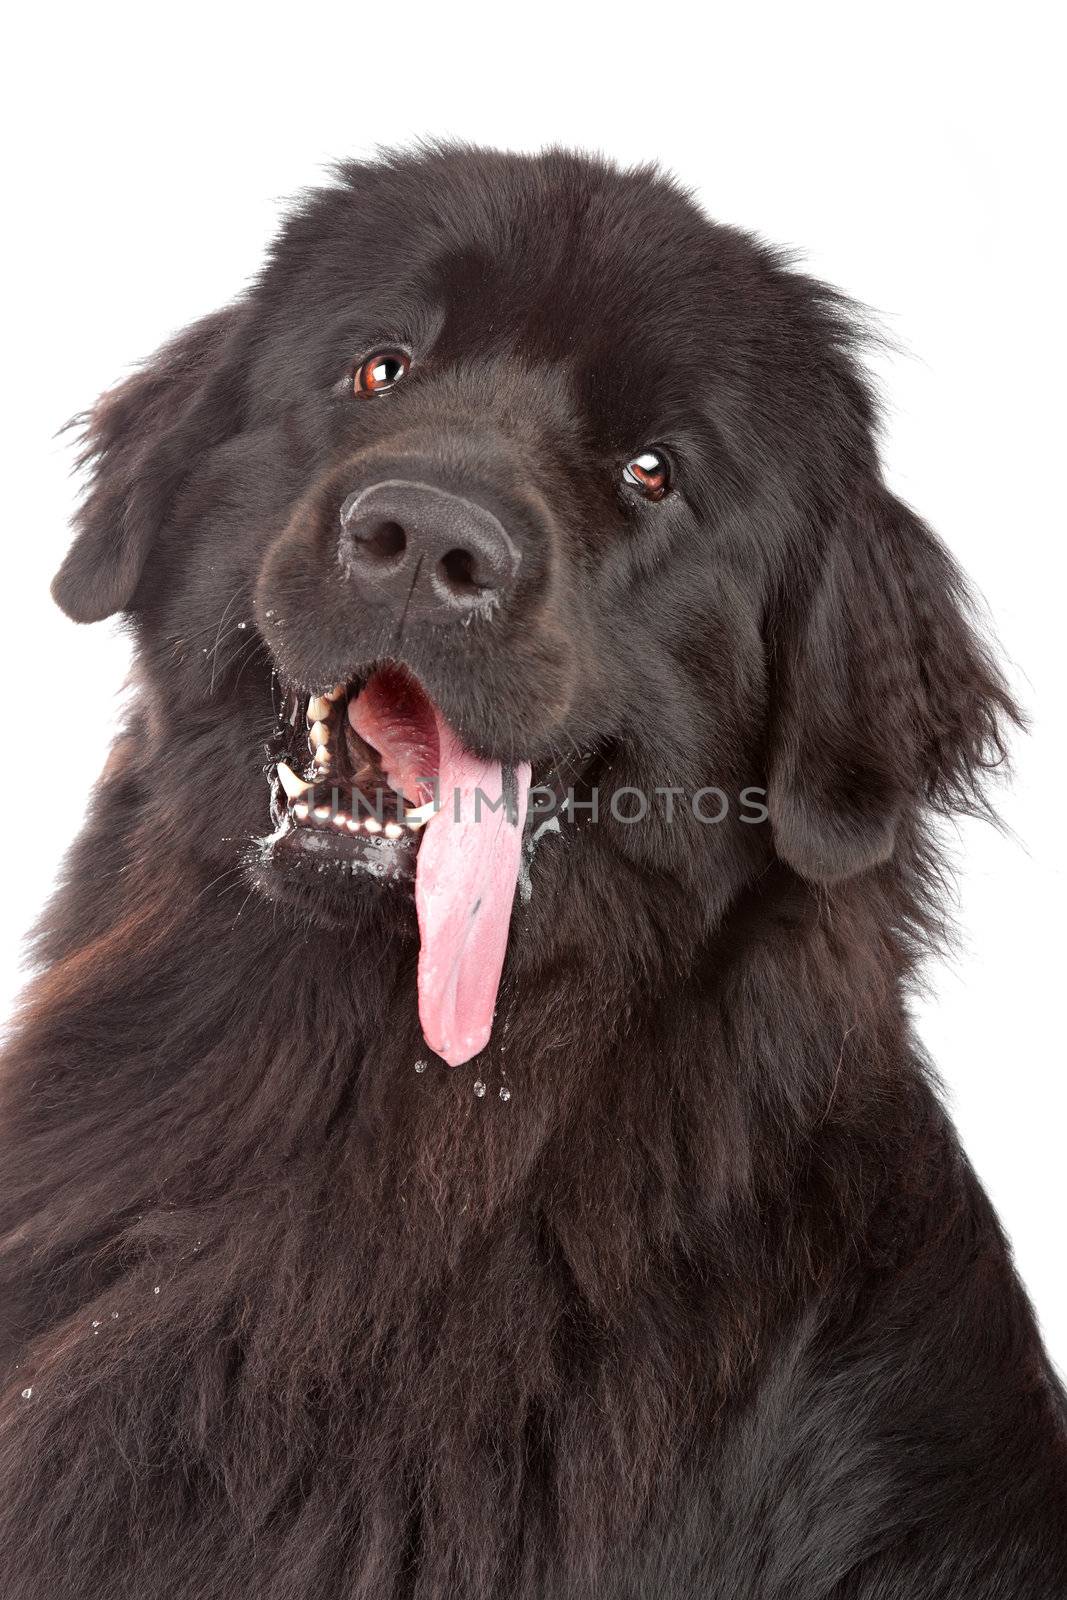 Newfoundland dog by eriklam